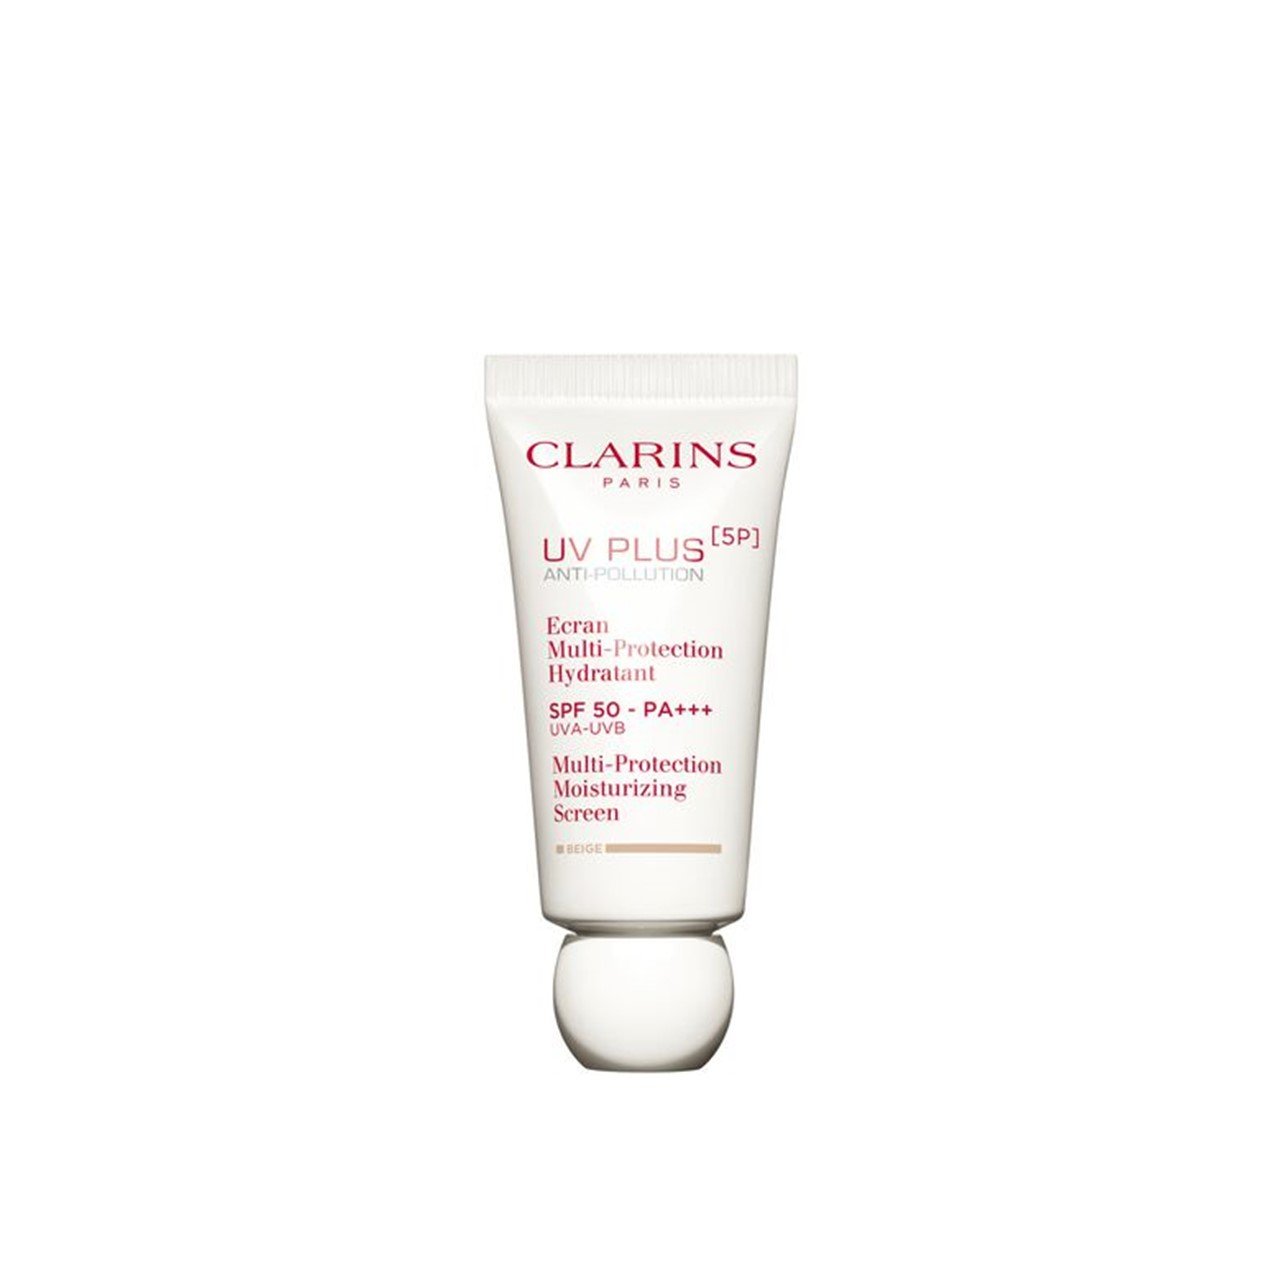 Clarins UV Plus [5P] Anti-Pollution SPF50